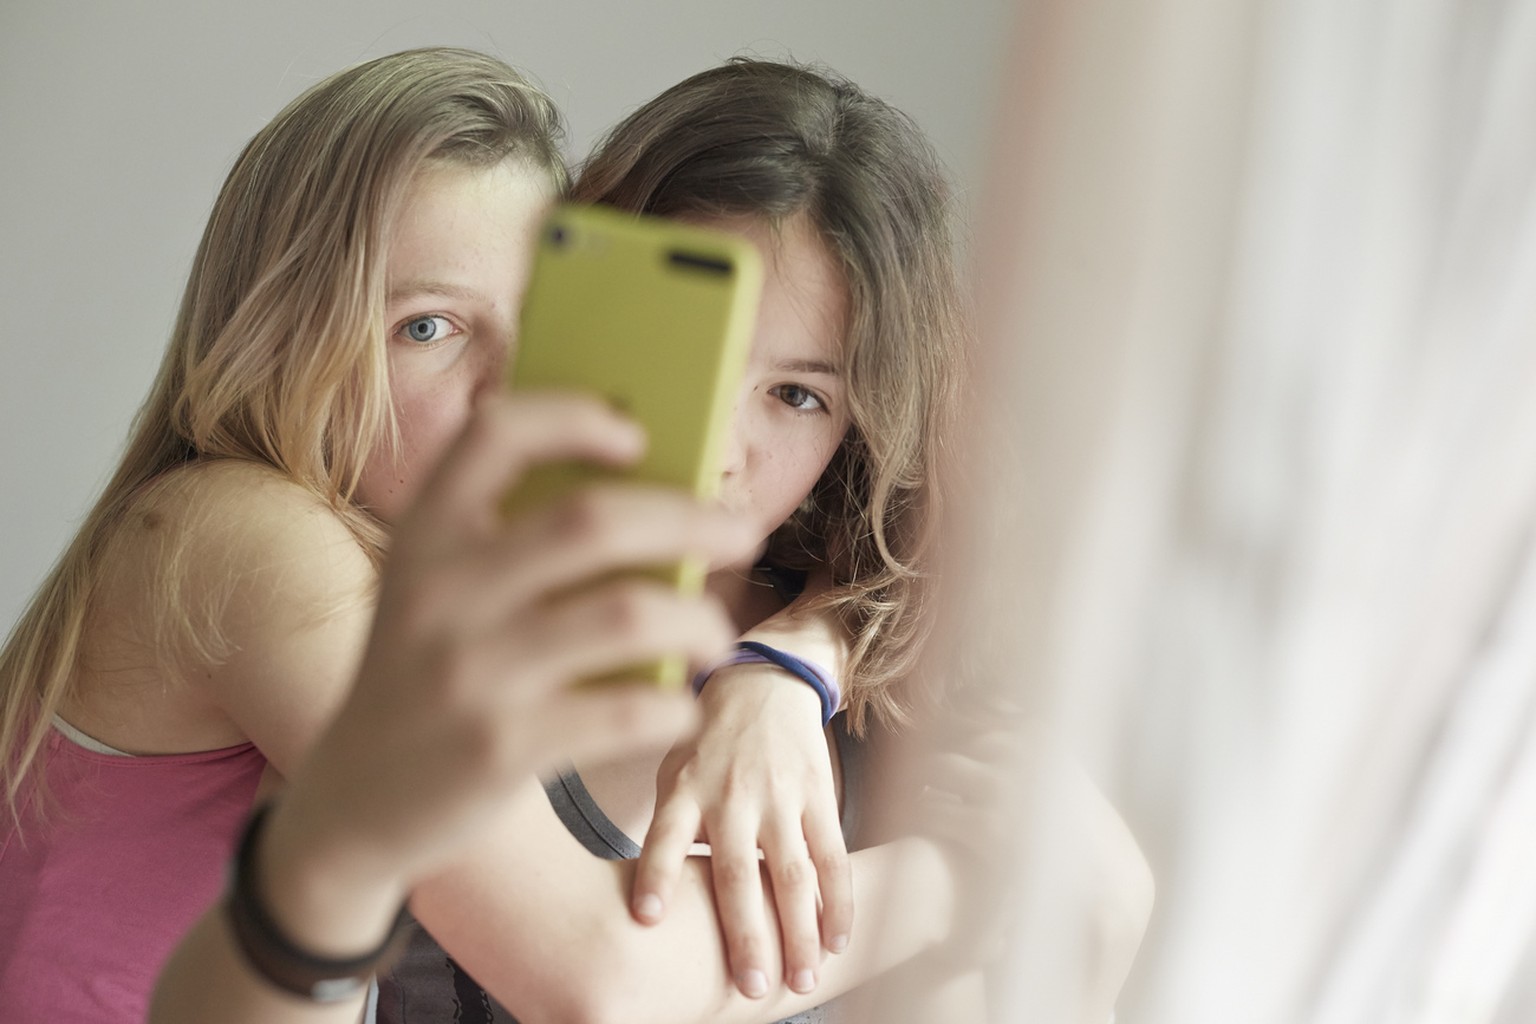 Die beiden Mädchen suchen gerade nach dem idealen Aufnahmewinkel für ein Selfie. Smartphones können manchmal ganz schön stressen.